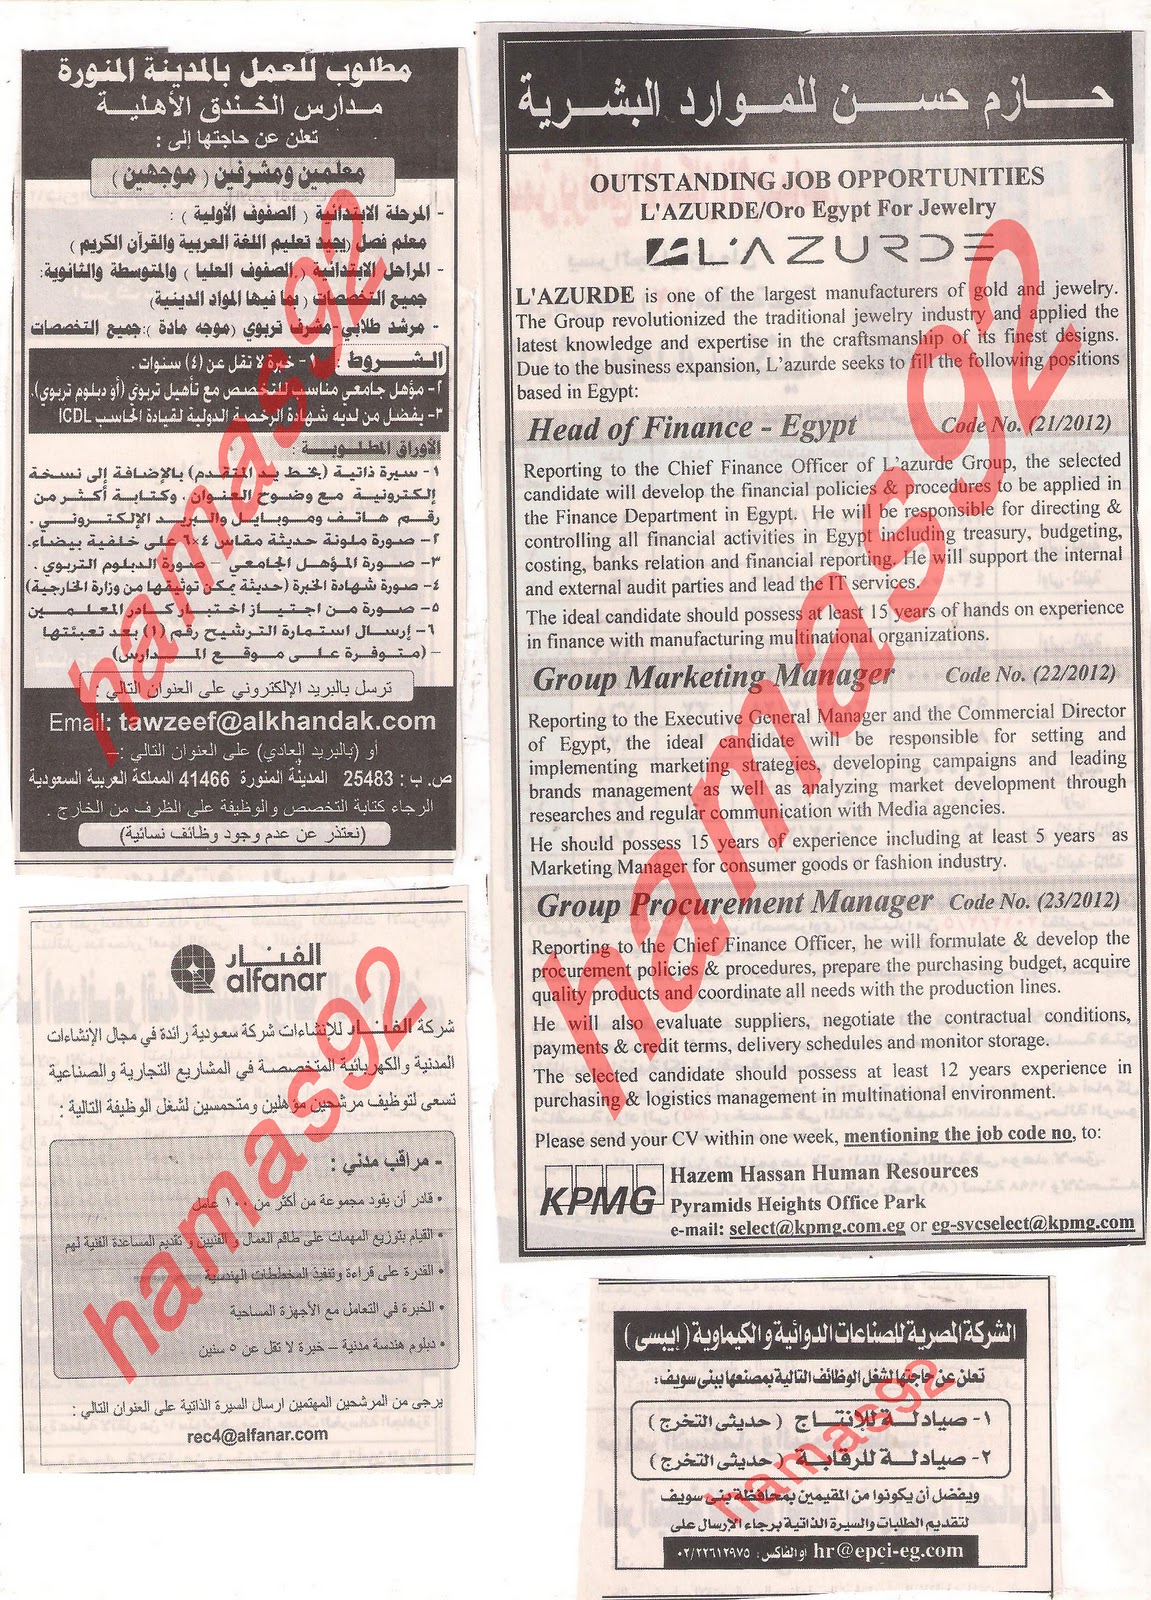 وظائف جريدة الاهرام الجمعة 20\1\2012 , الجزء الثالث Picture+017